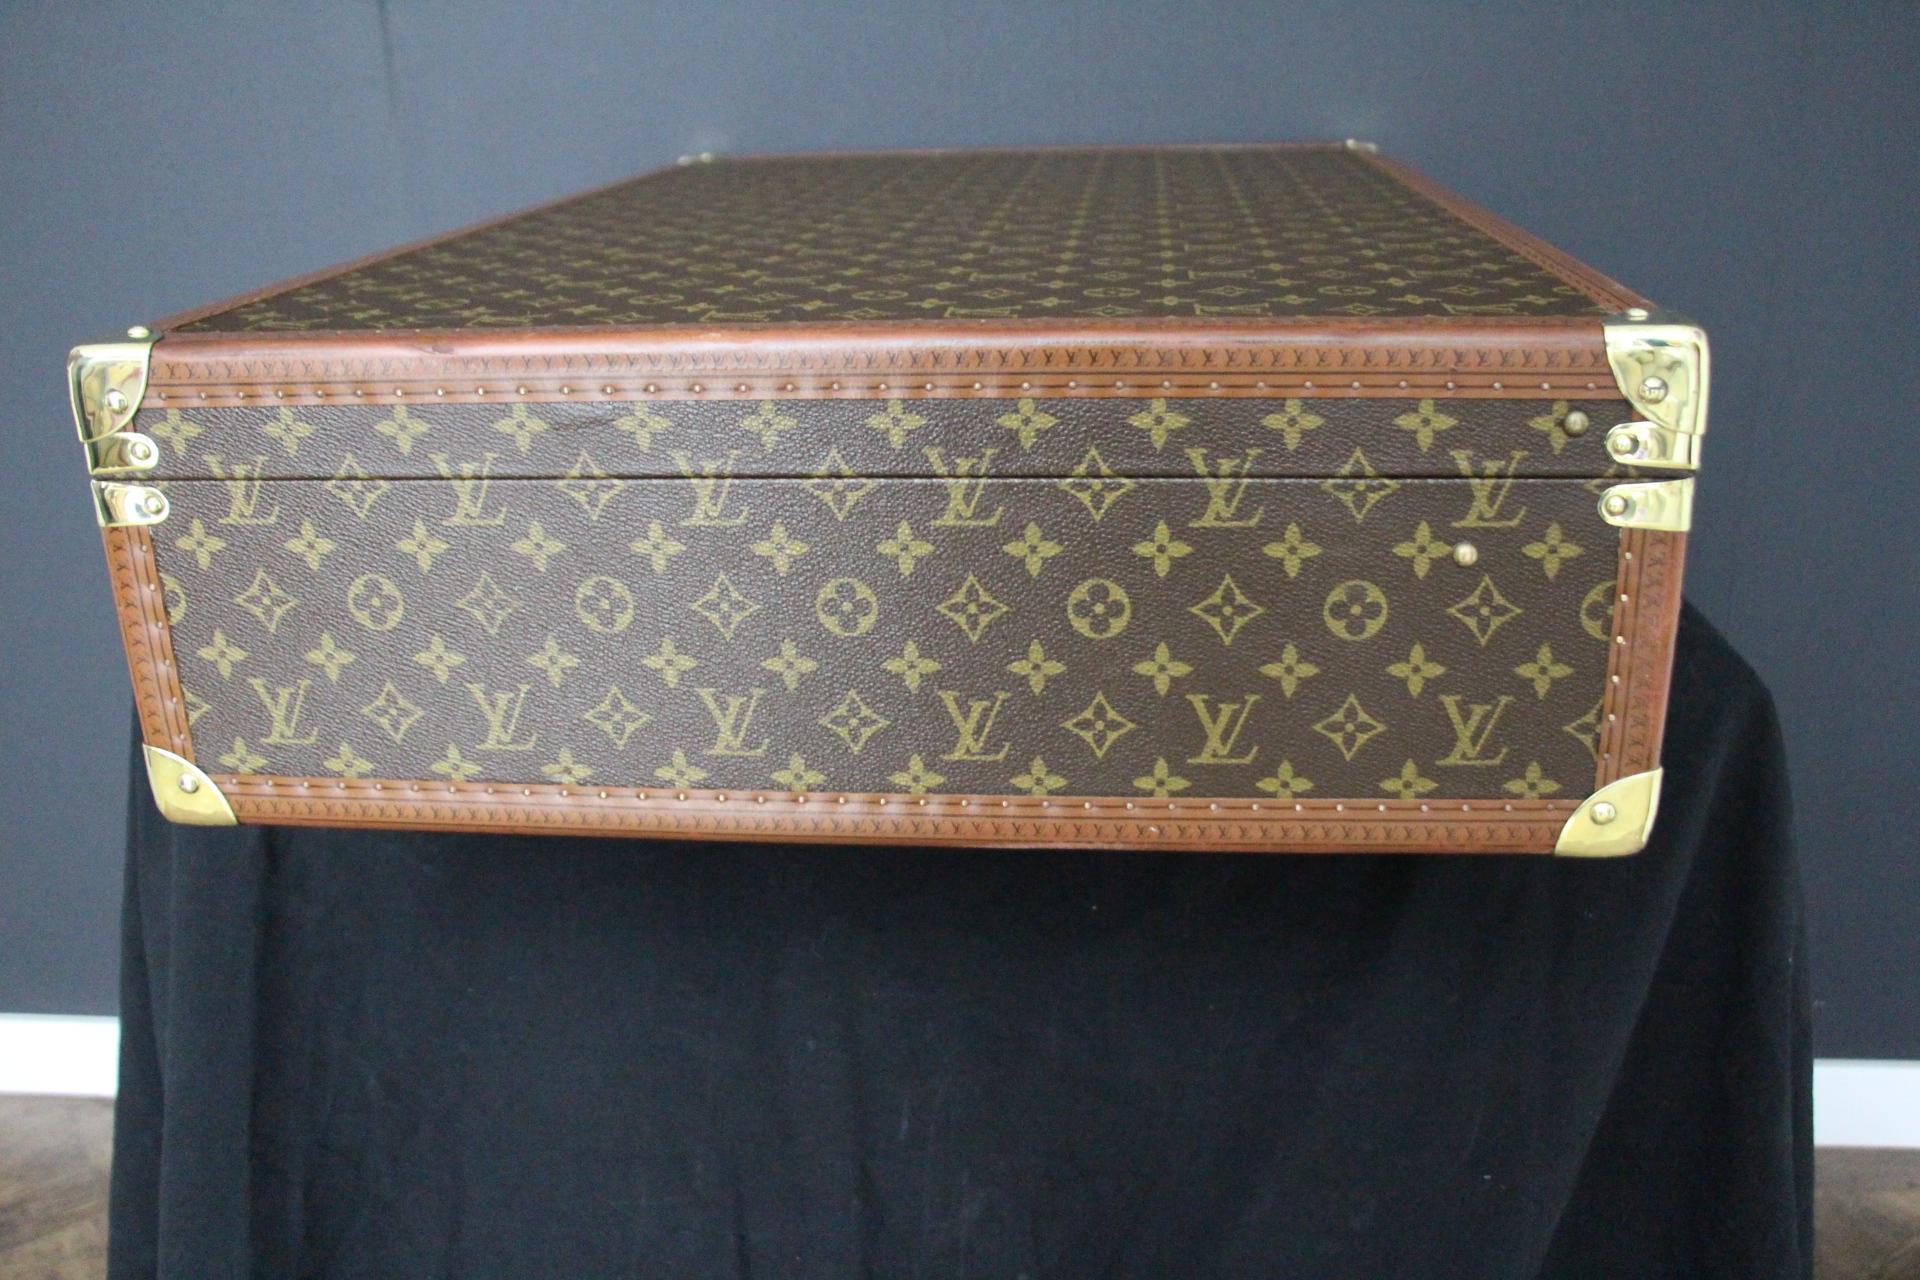  Louis Vuitton Suitcase 80 cm,  80 cm Louis Vuitton Trunk For Sale 1